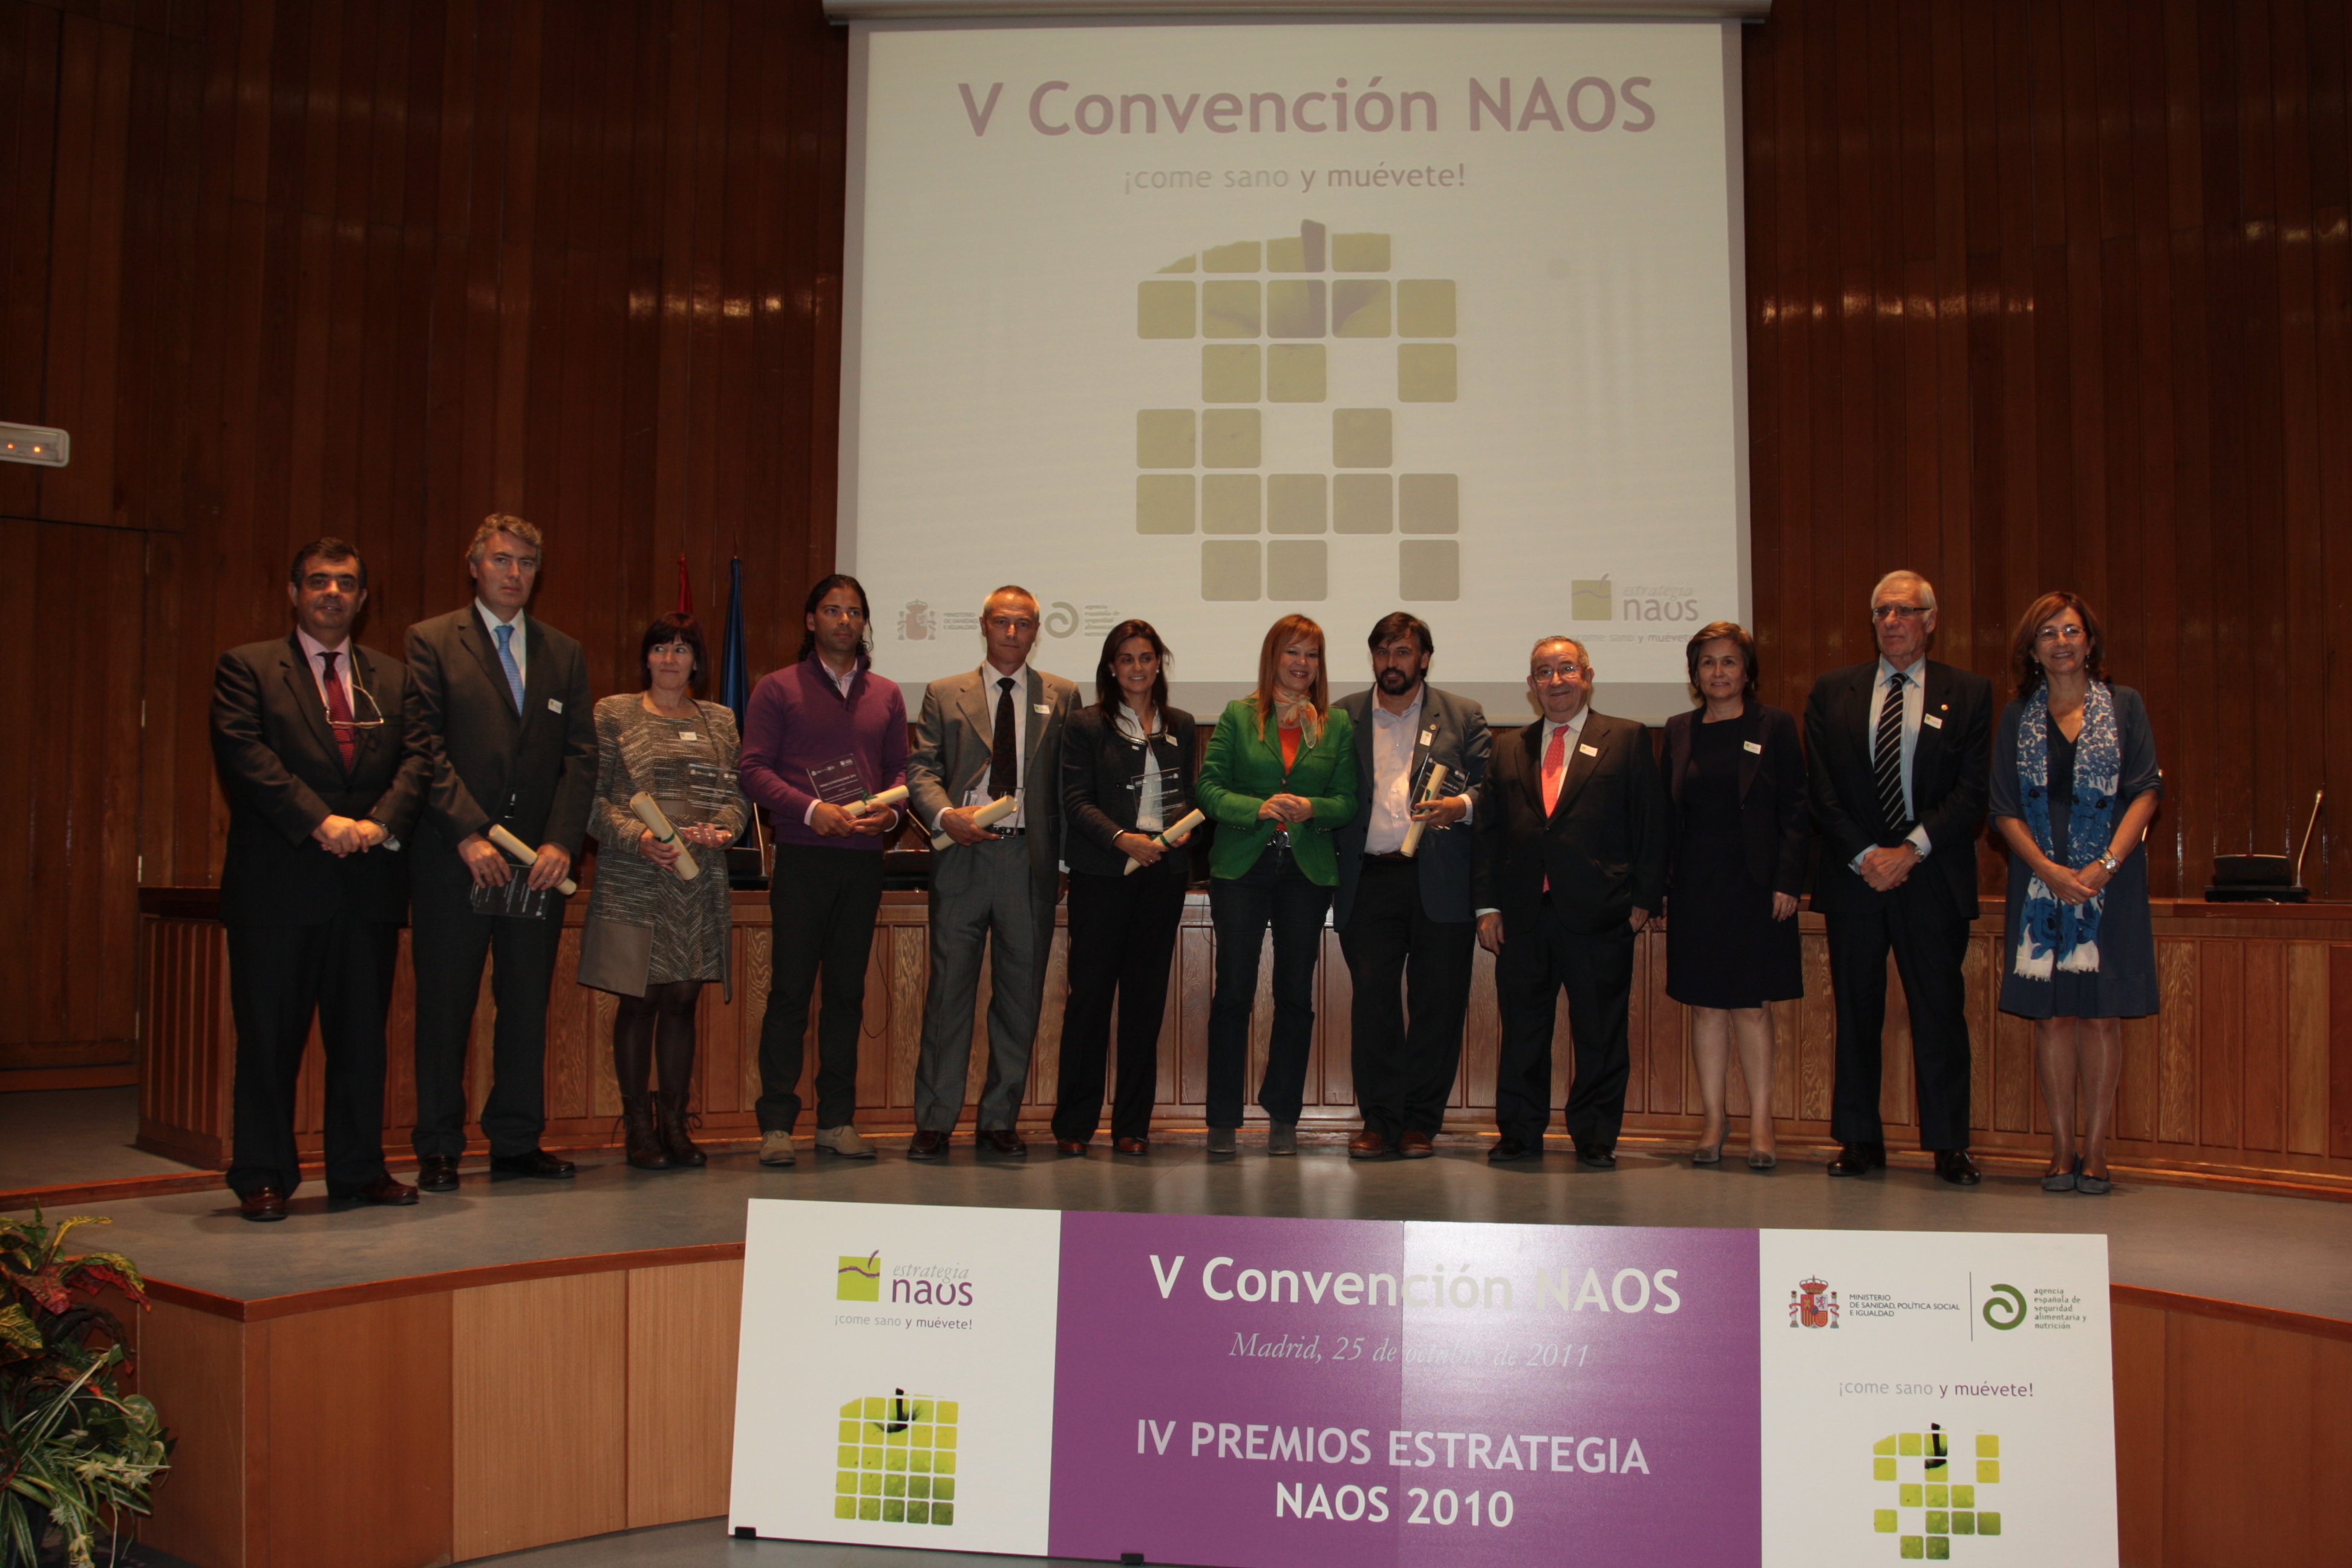 IV Premios Estrategia NAOS, edición 2010